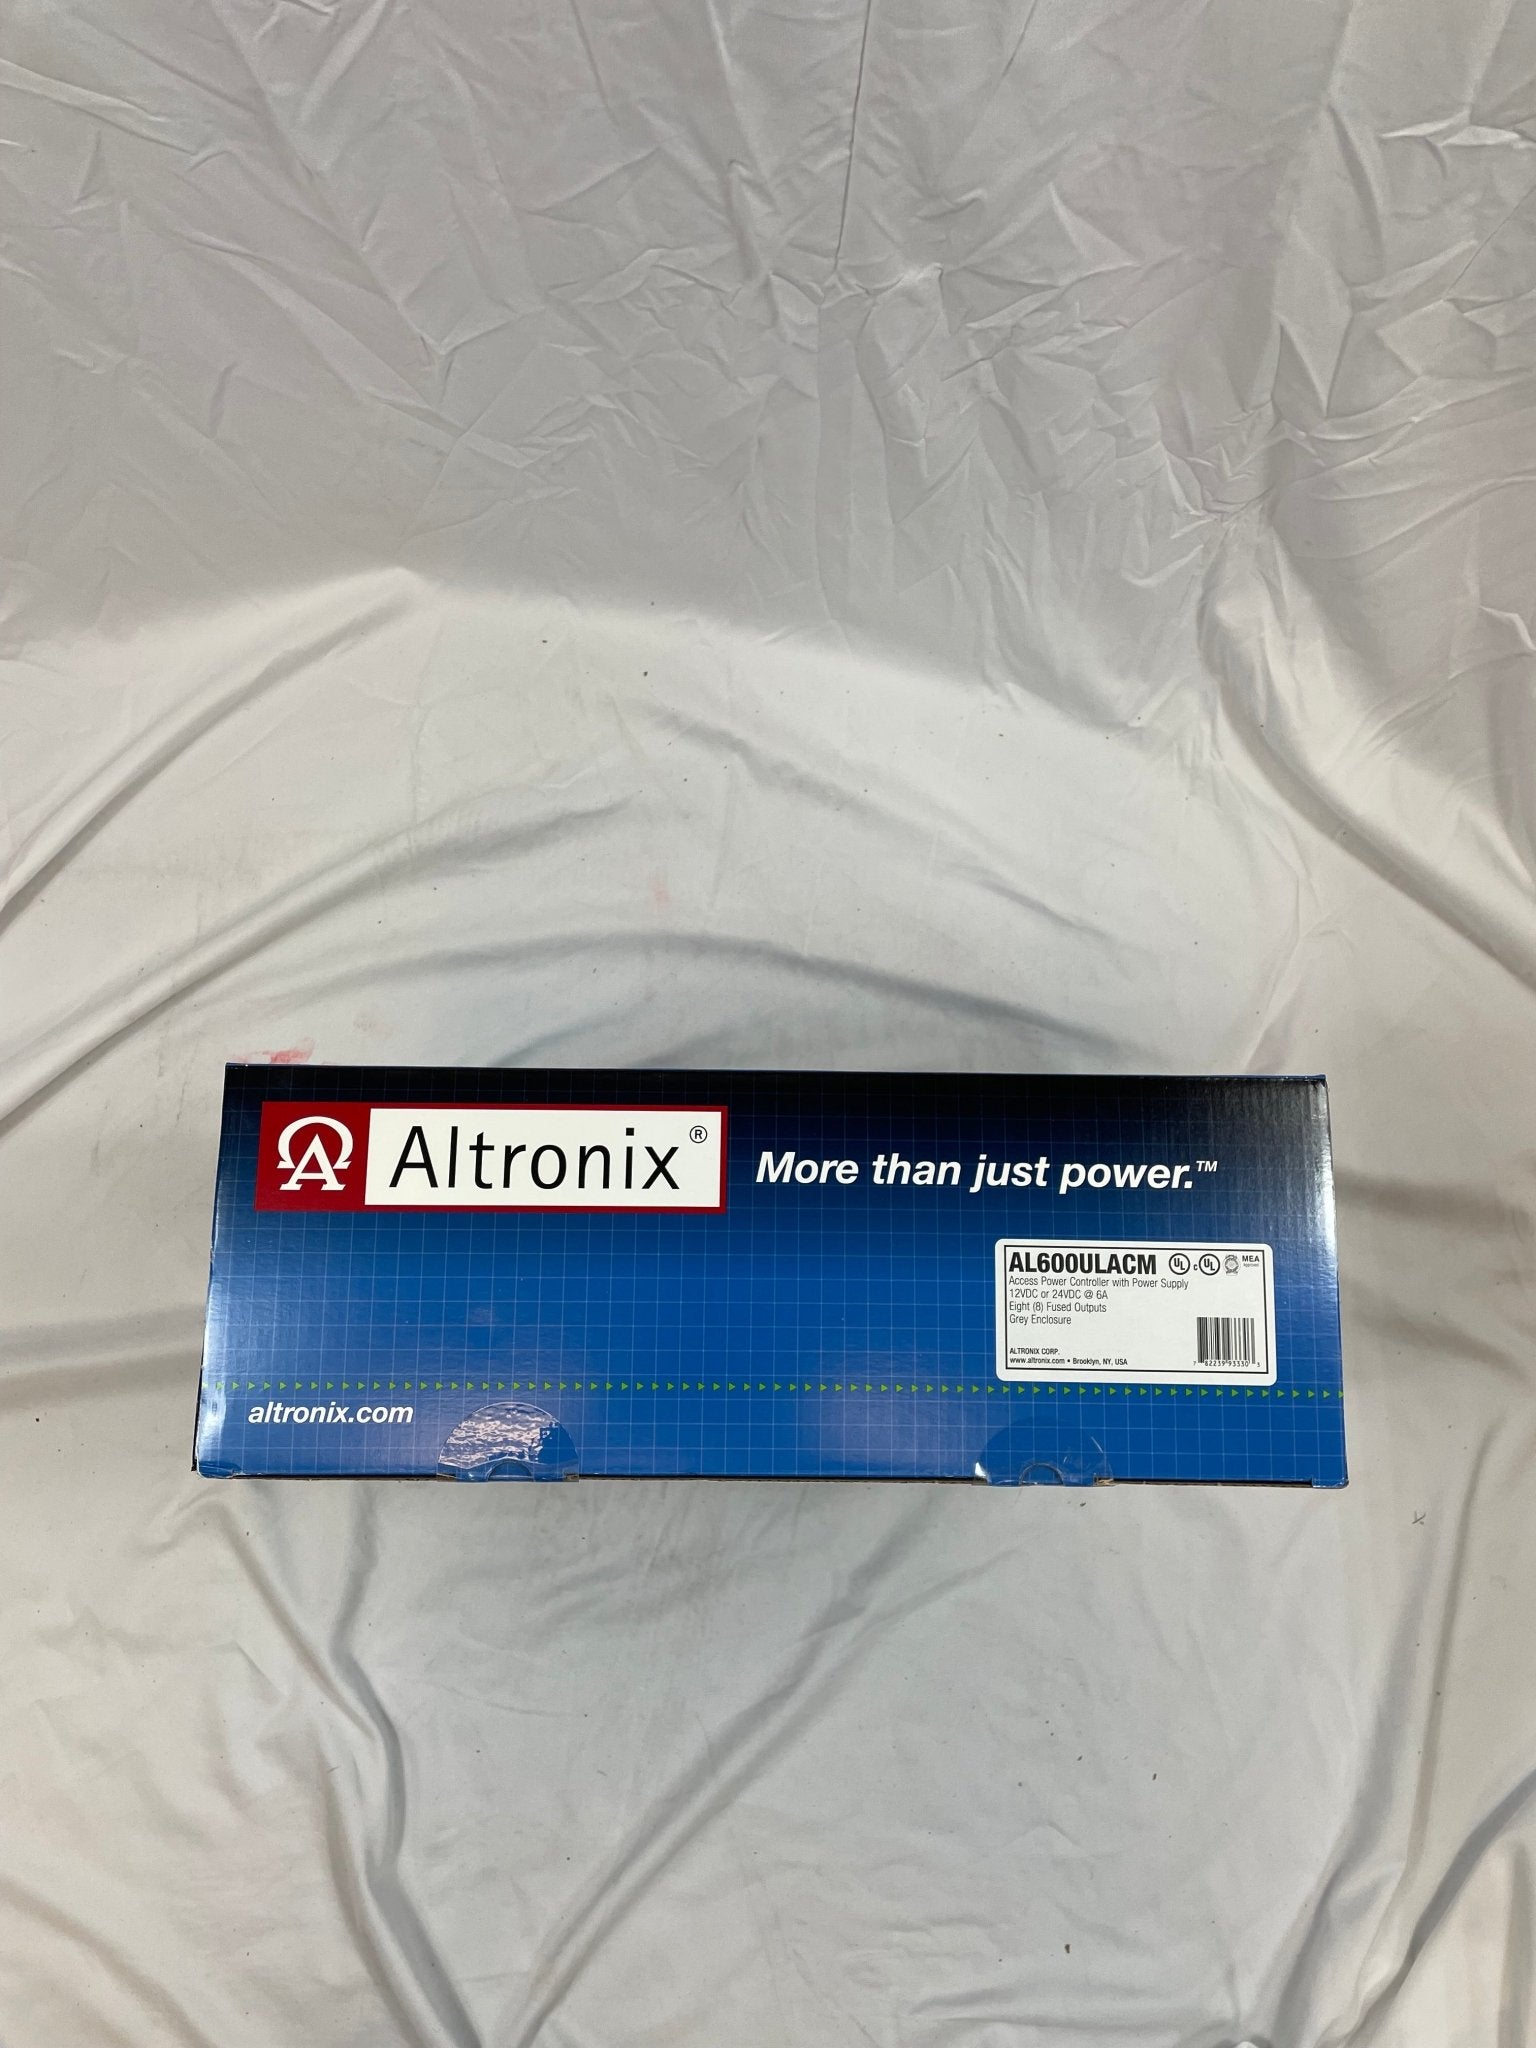 Altronix AL600ULACM - The Fire Alarm Supplier